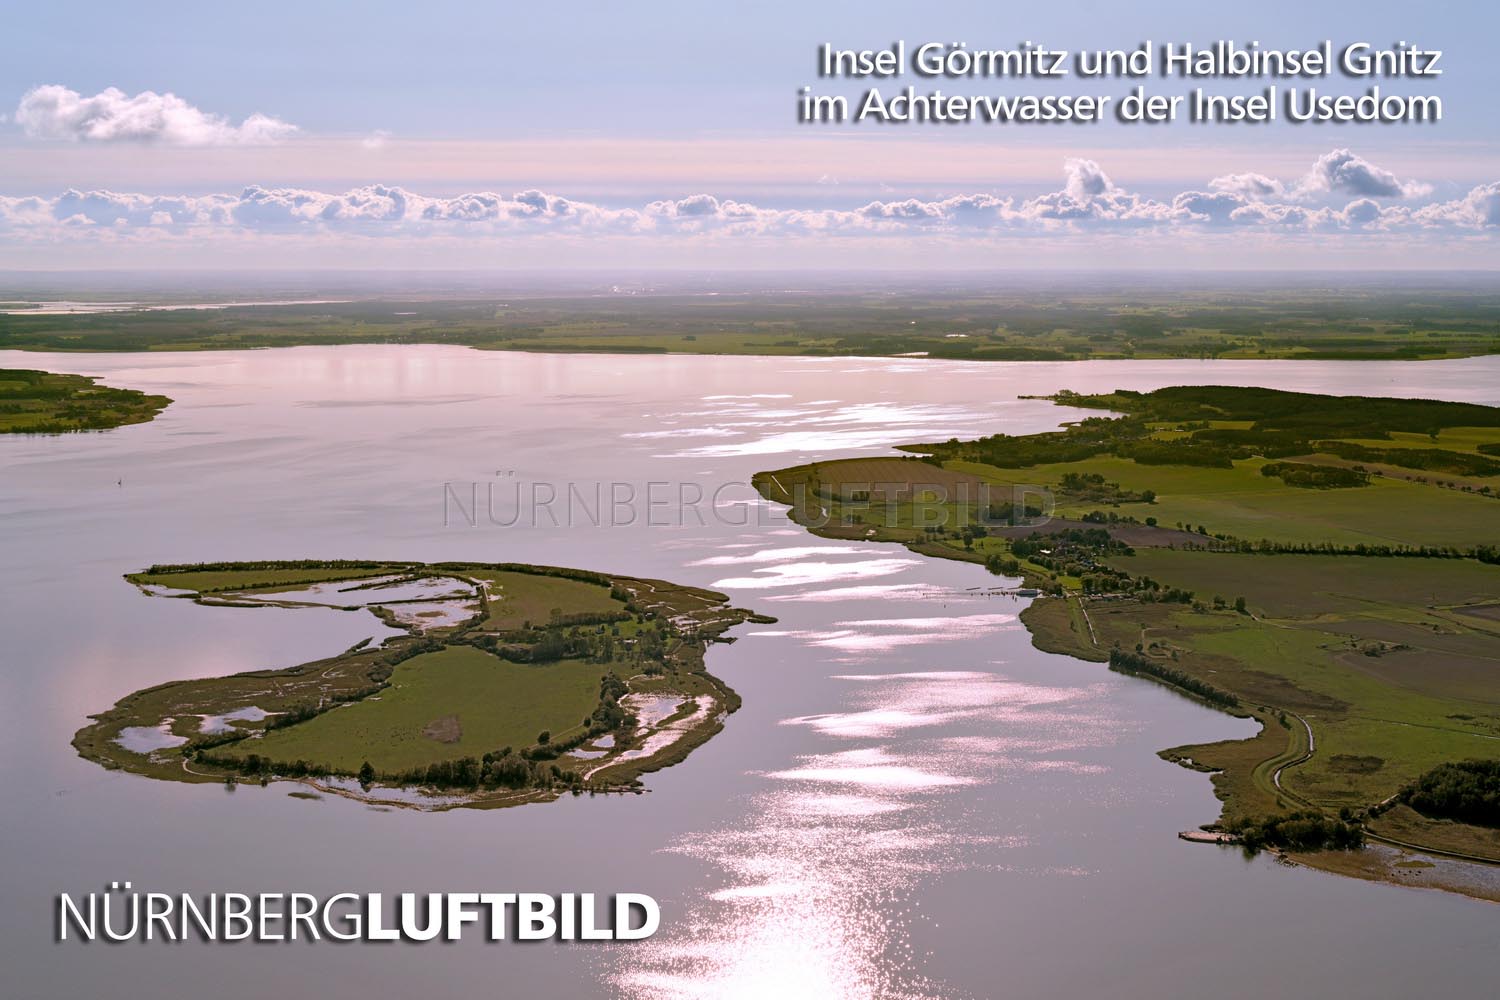 Insel Görmitz und Halbinsel Gnitz im Achterwasser der Insel Usedom